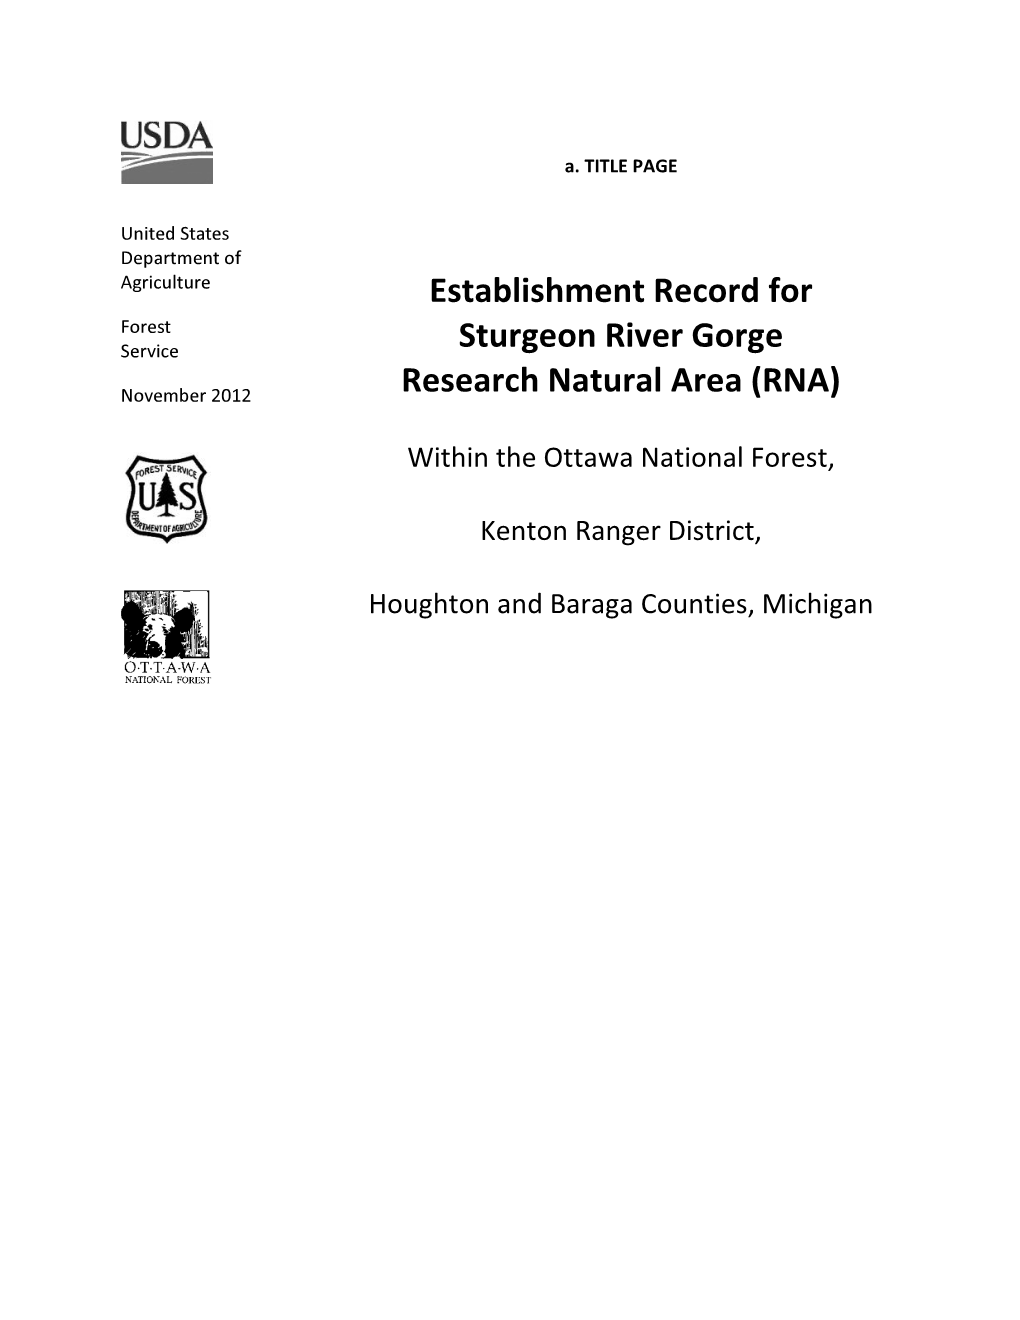 Establishment Record for Sturgeon River Gorge Research Natural Area